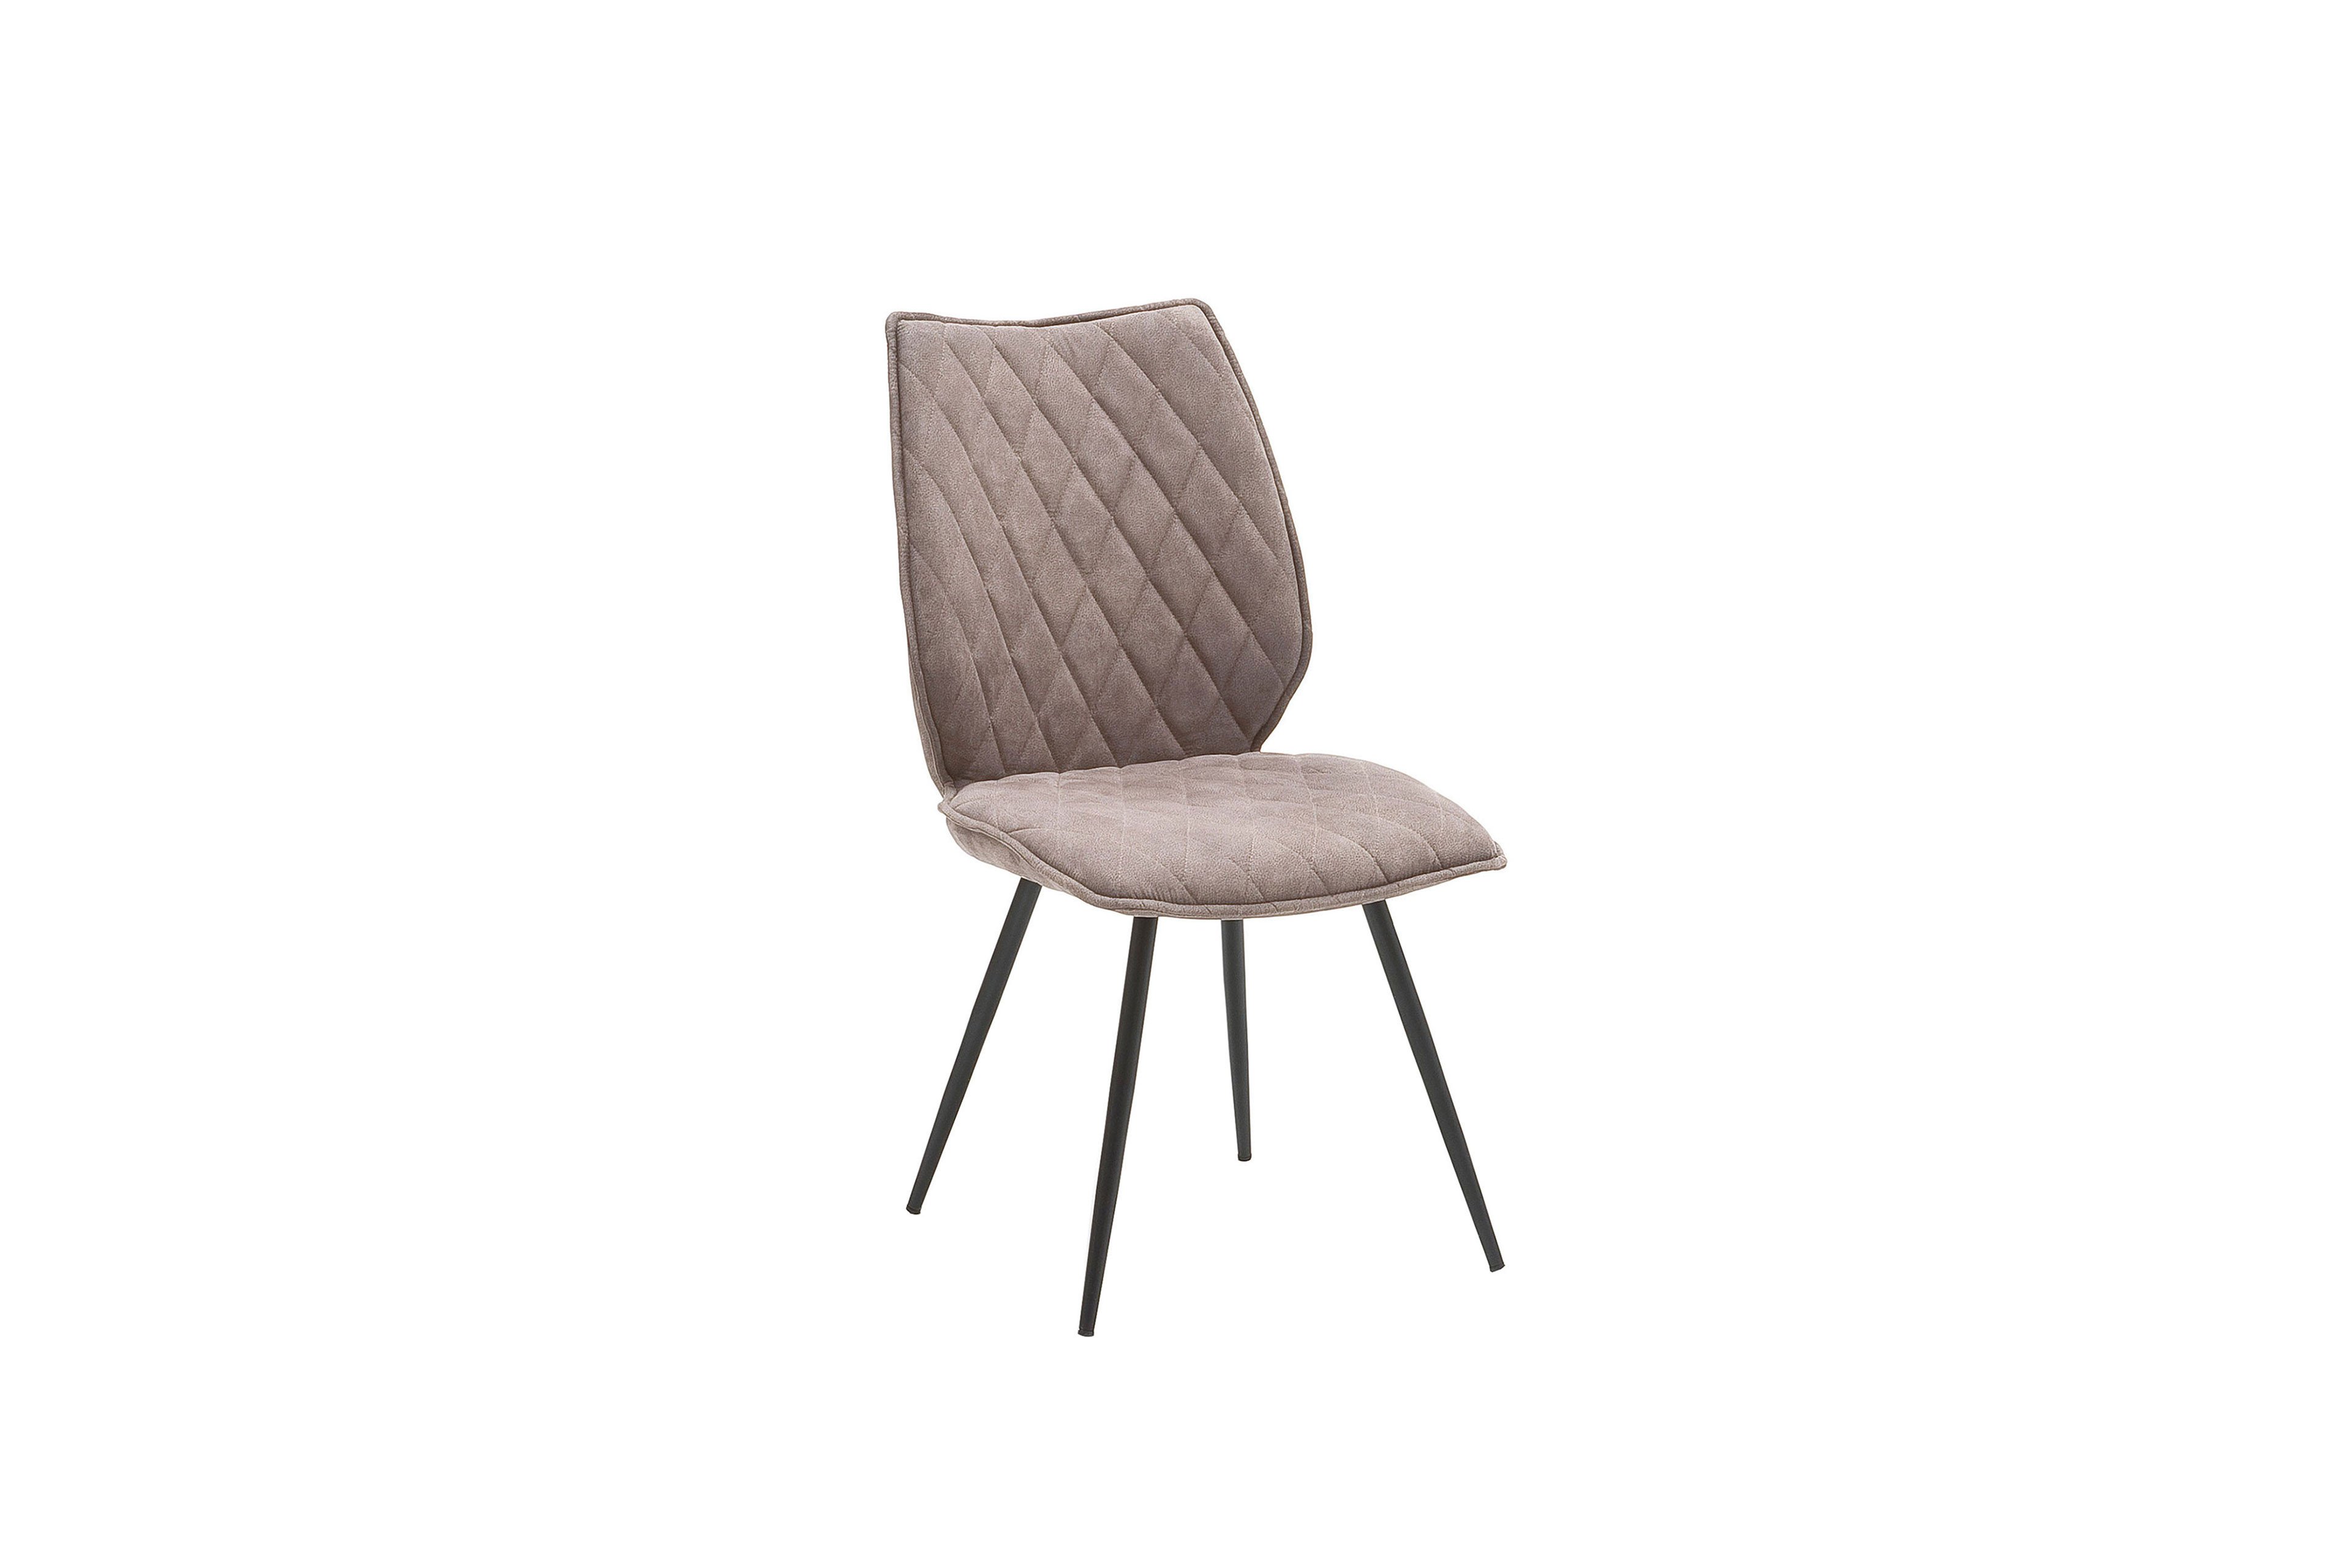 MCA furniture Stuhl Navarra in Sand | Möbel Letz - Ihr Online-Shop